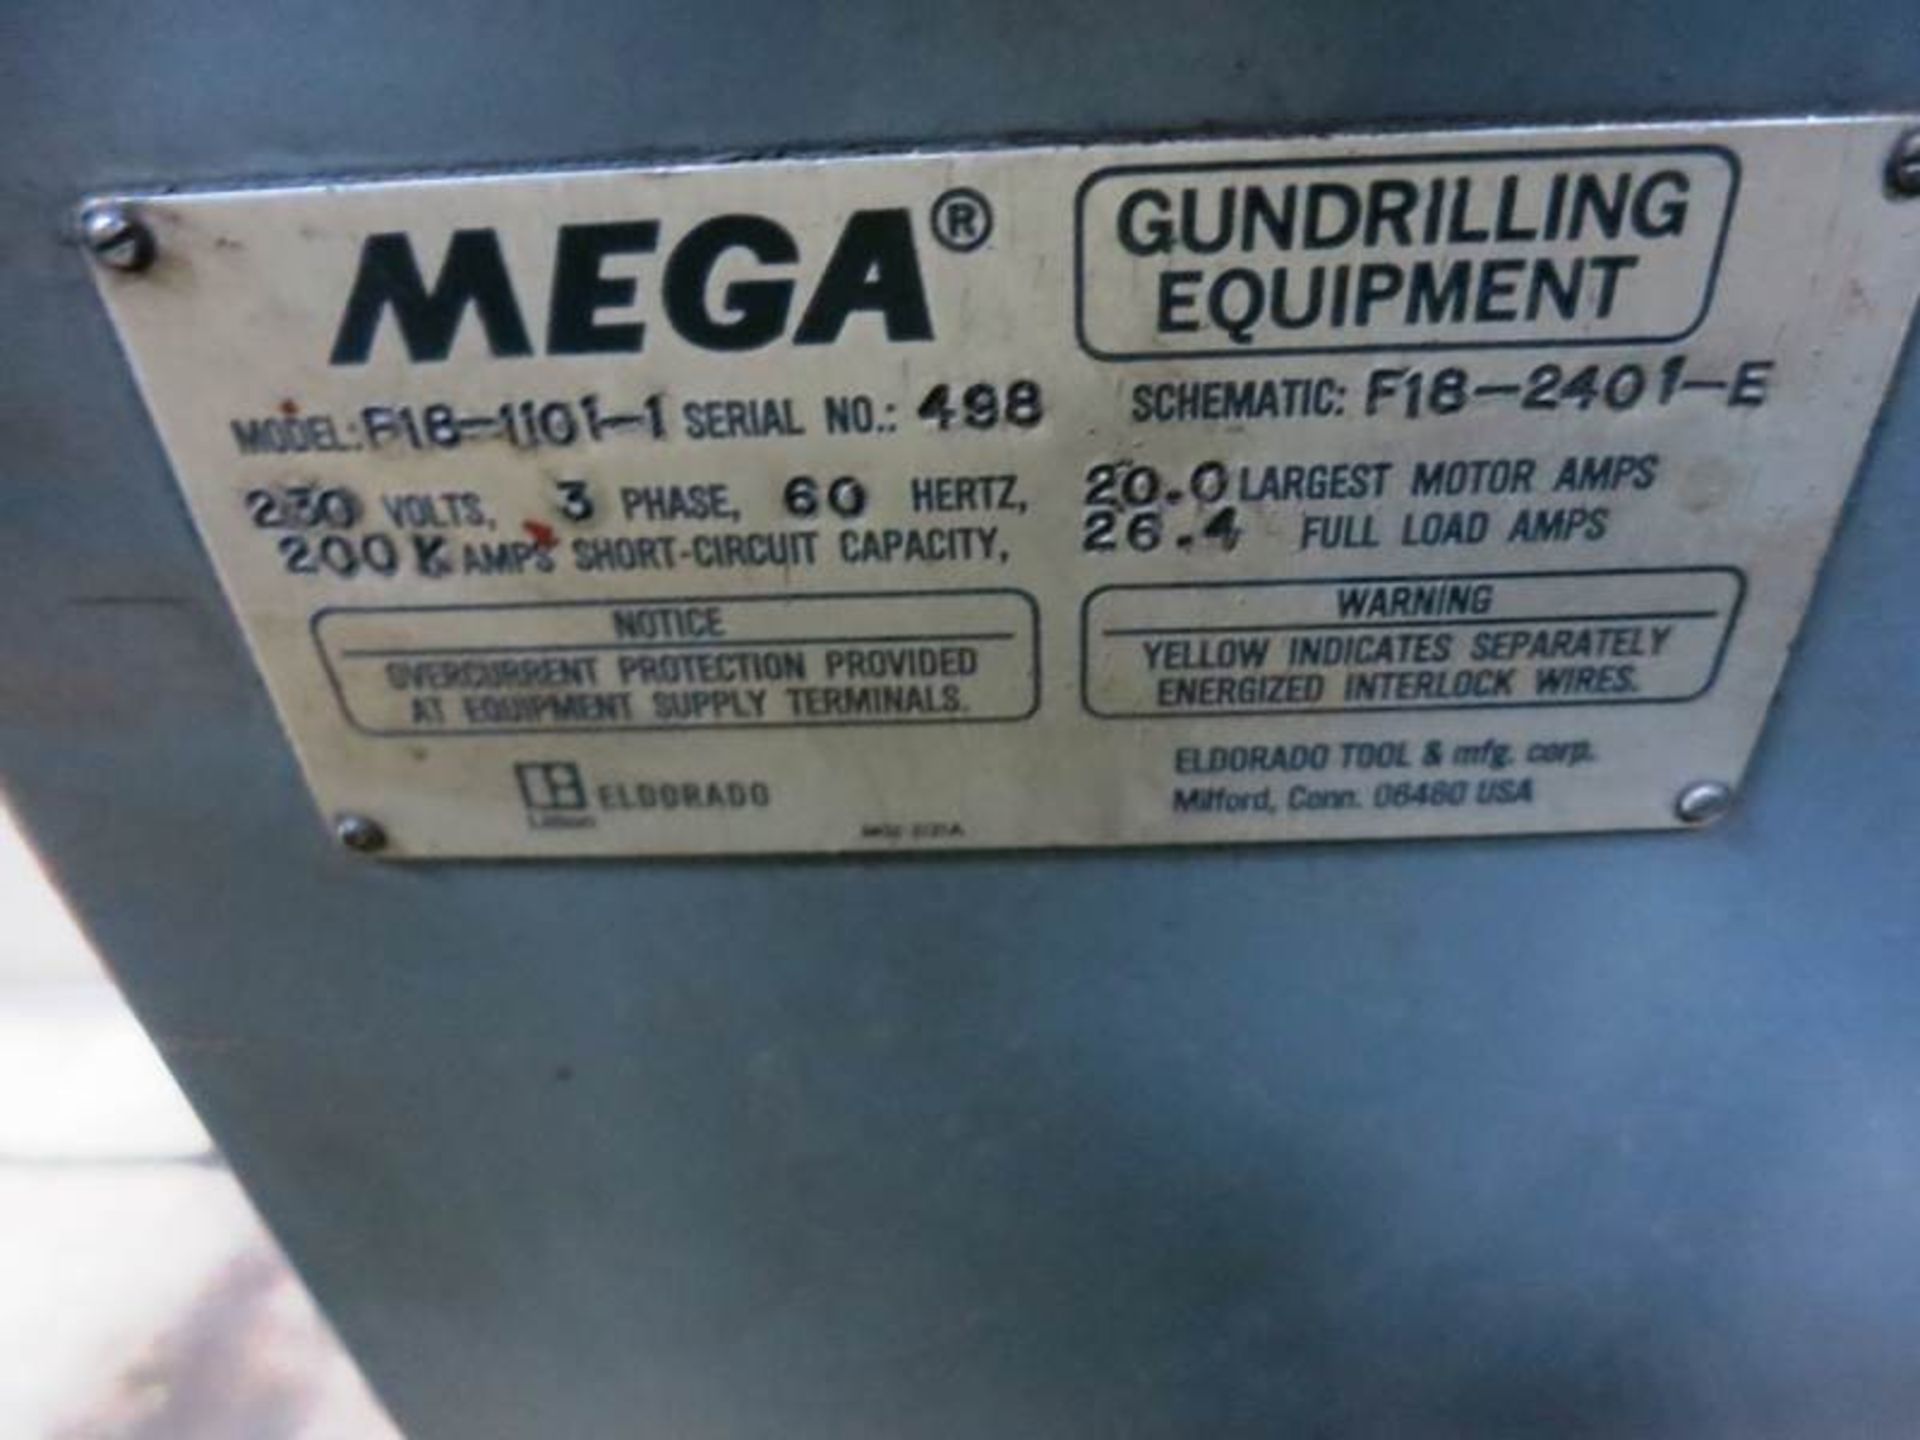 3/4" x 15" Eldorado Mega M-75-1032 Single Spindle Gun Drilling Machine, S/N 629 General - Image 5 of 10